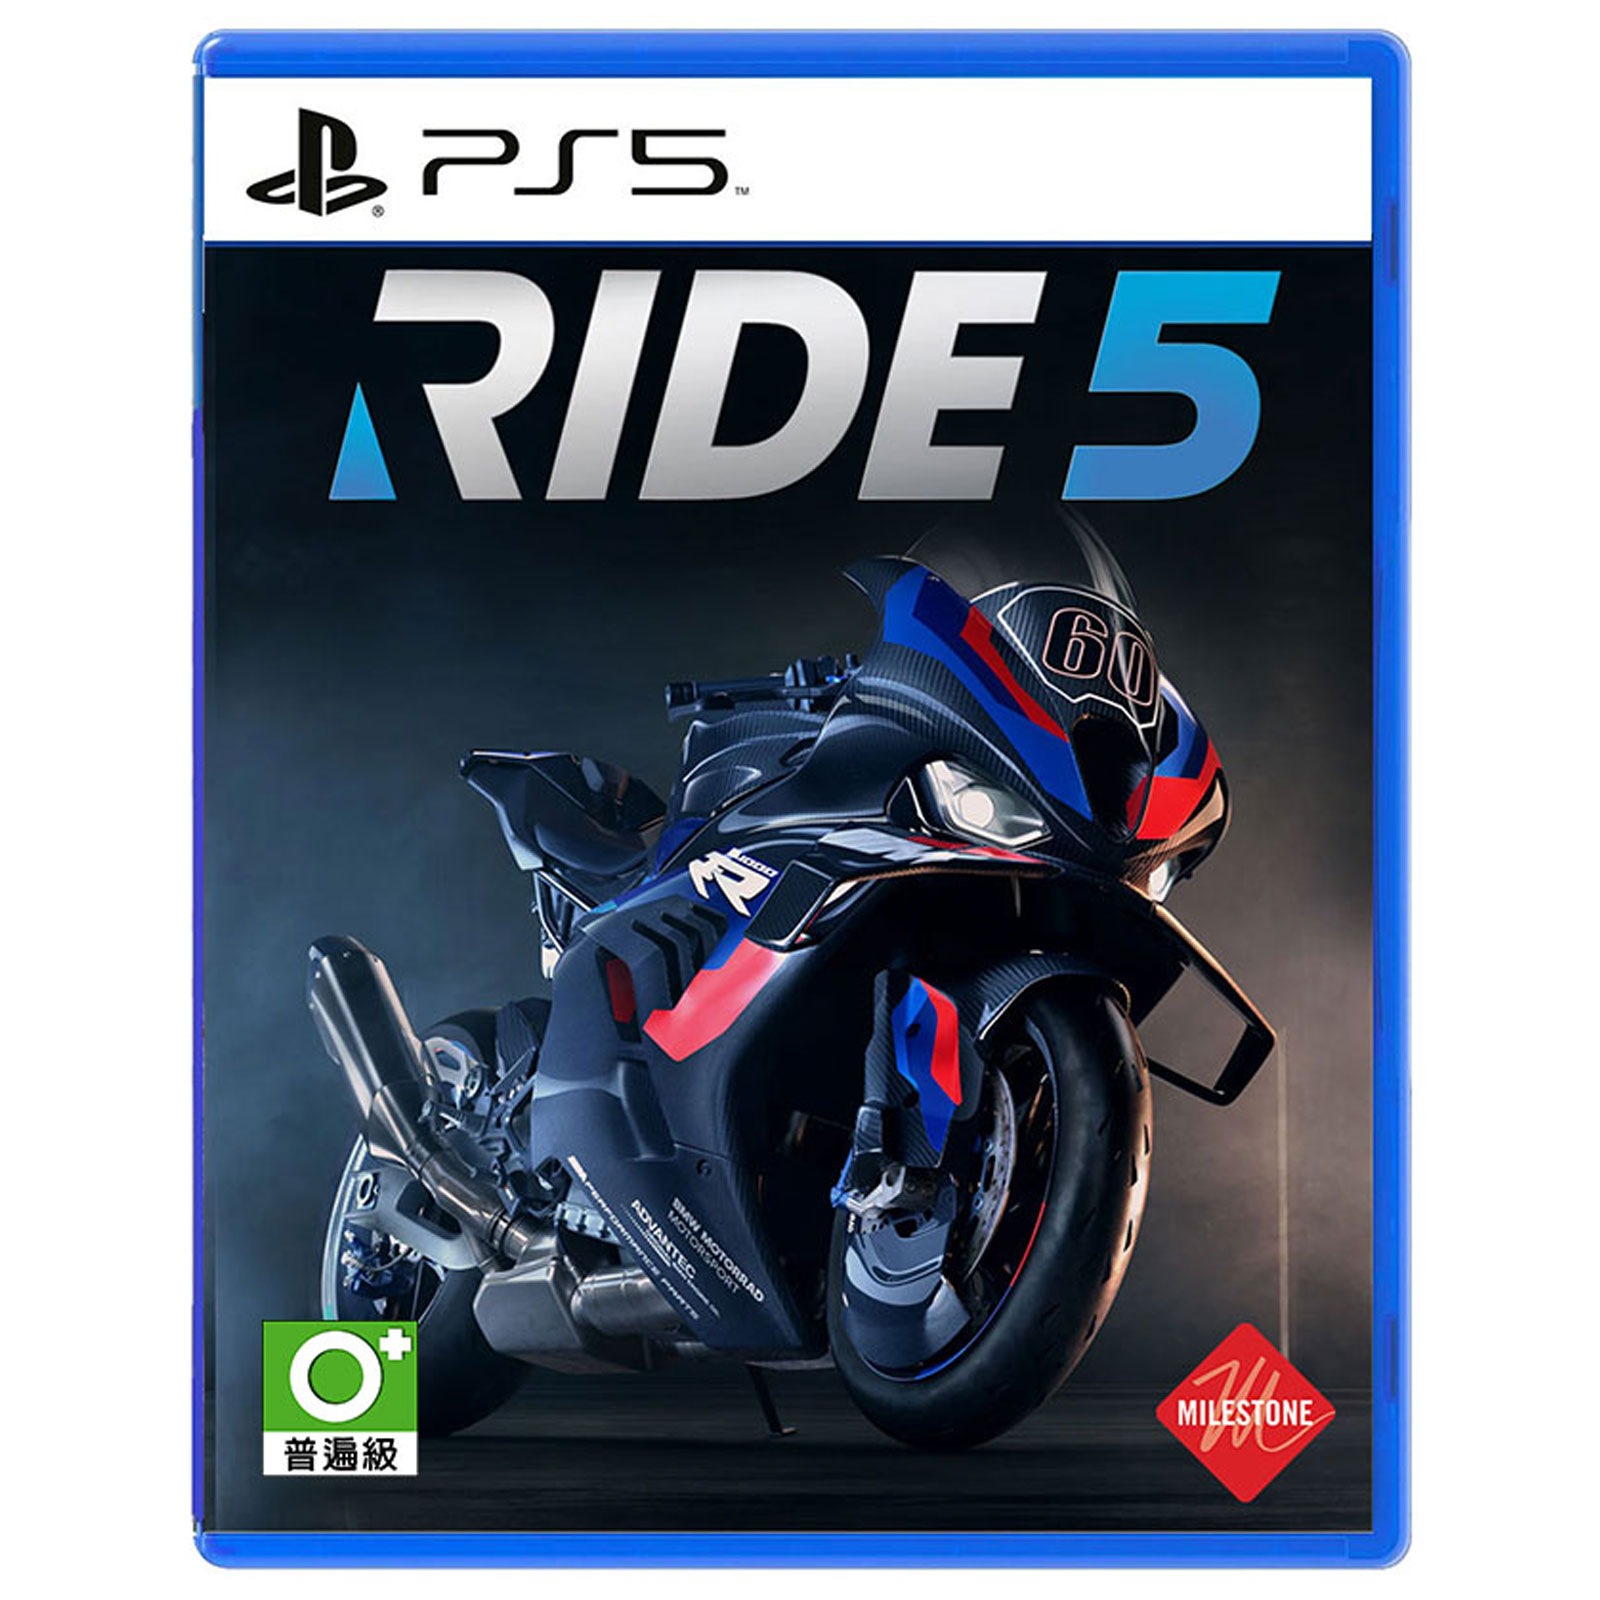 نکته خرید - قیمت روز بازی Ride 5 مخصوص PS5 خرید